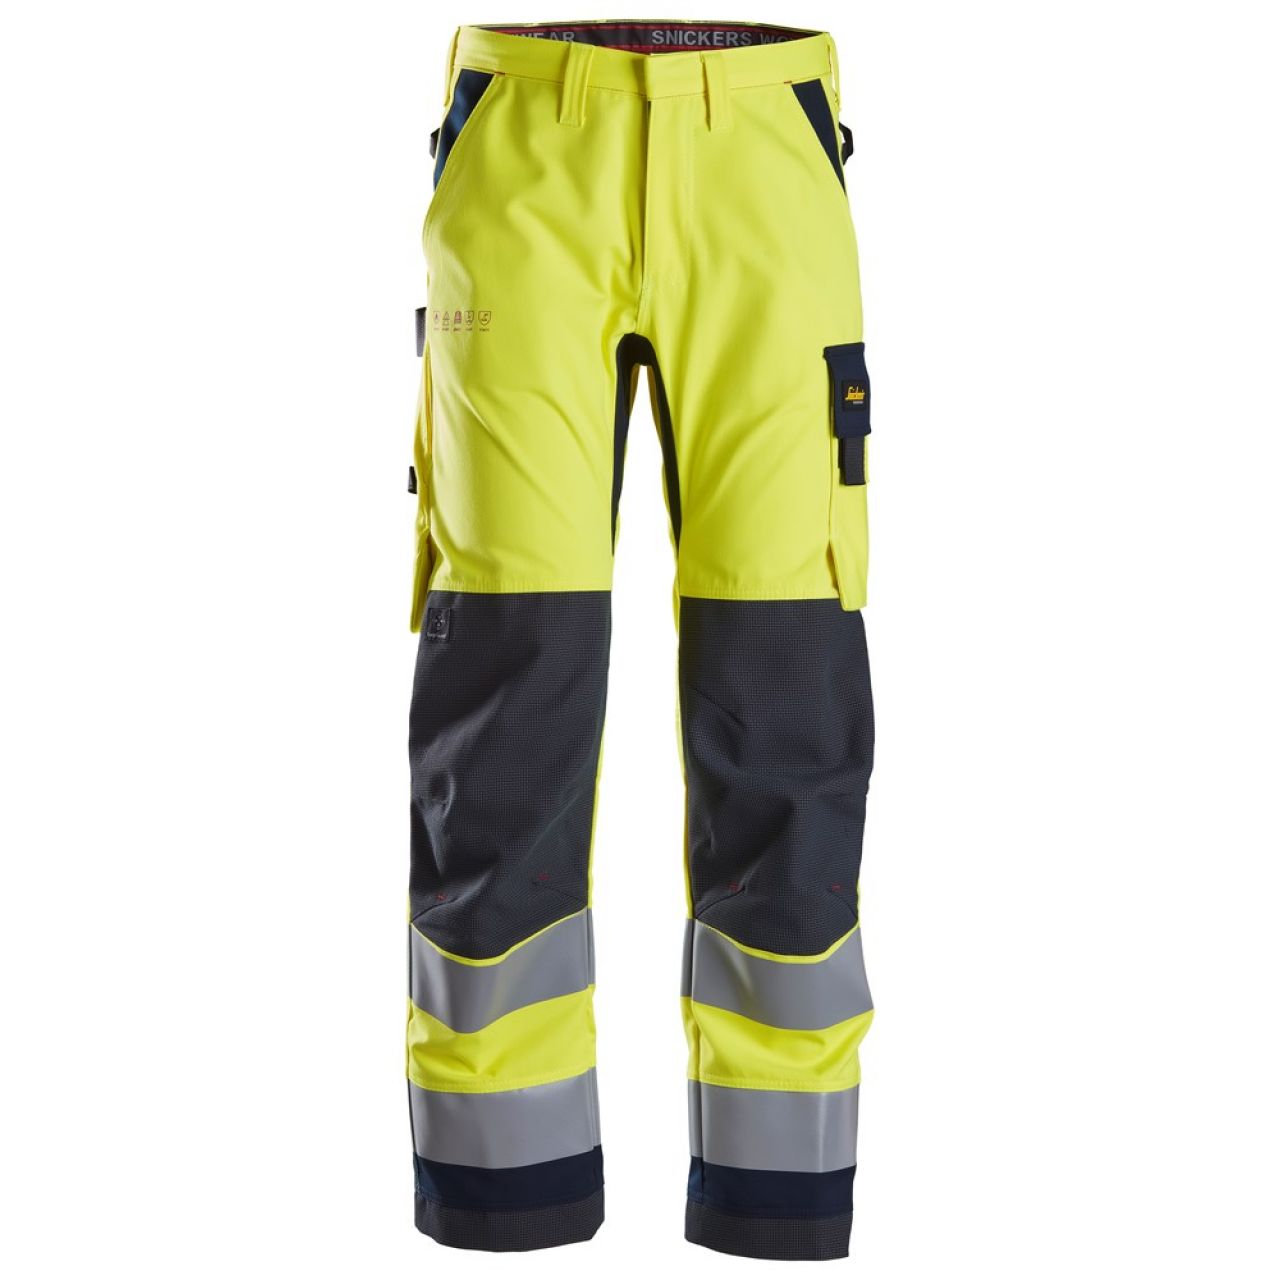 6360 Pantalones largos de trabajo de alta visibilidad clase 2 ProtecWork amarillo-azul marino talla 46